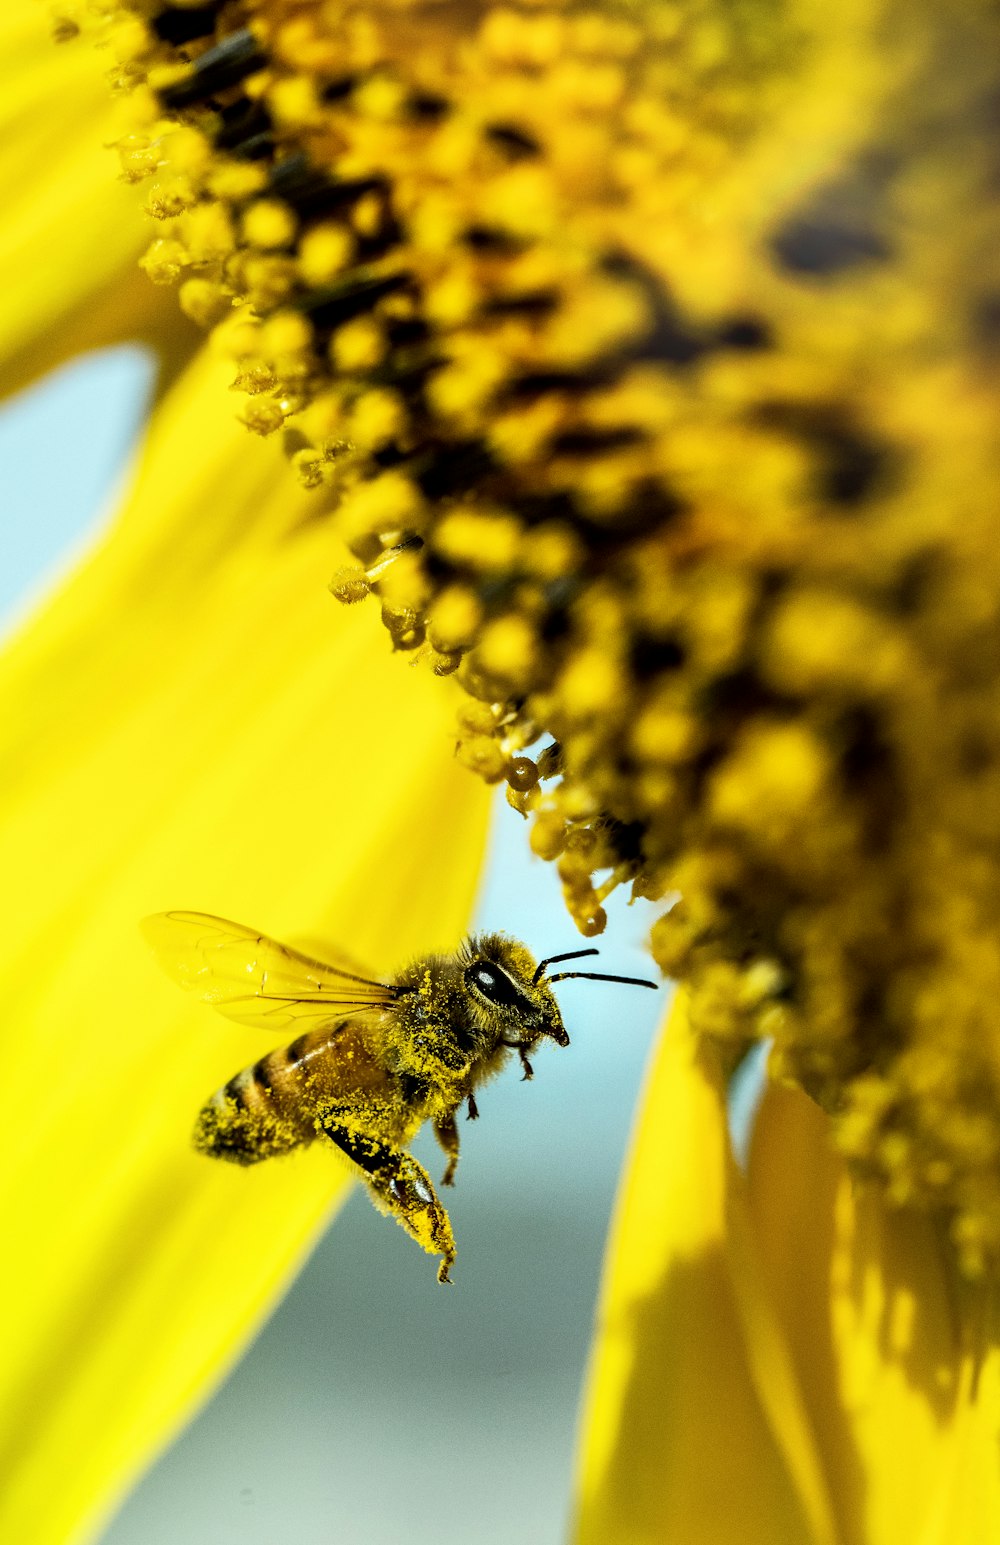 abeja amarilla volando junto a la flor